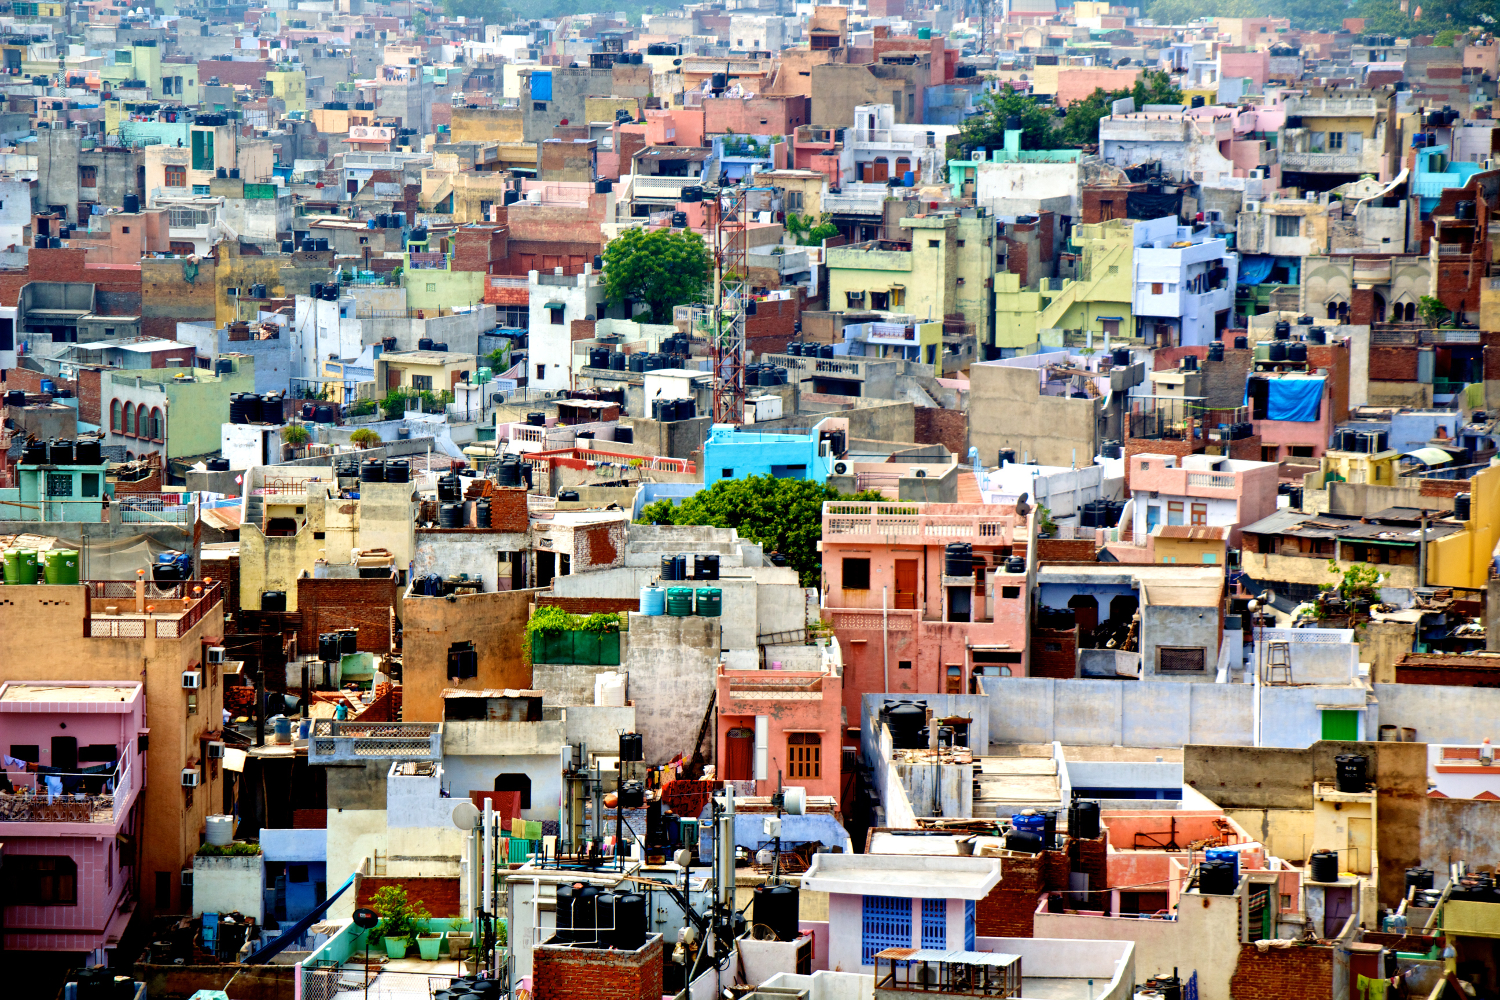 Old Delhi's colourful, chaotic sprawl. © José Antonio Morcillo Valenciano / CC BY 2.0